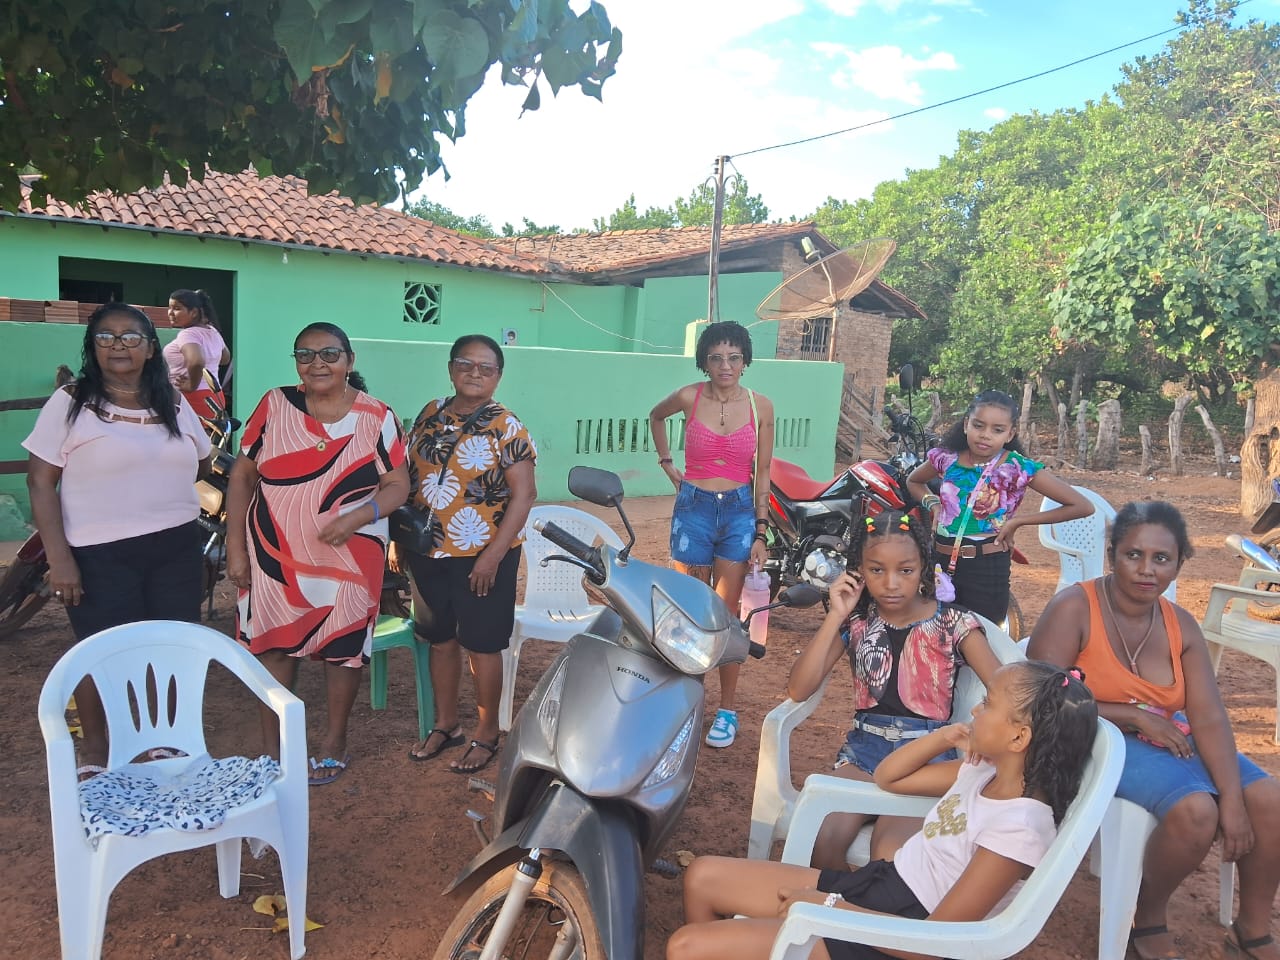 Comunidades de Piripiri realizam 5ª edição de festival Cultural Quilombola do município